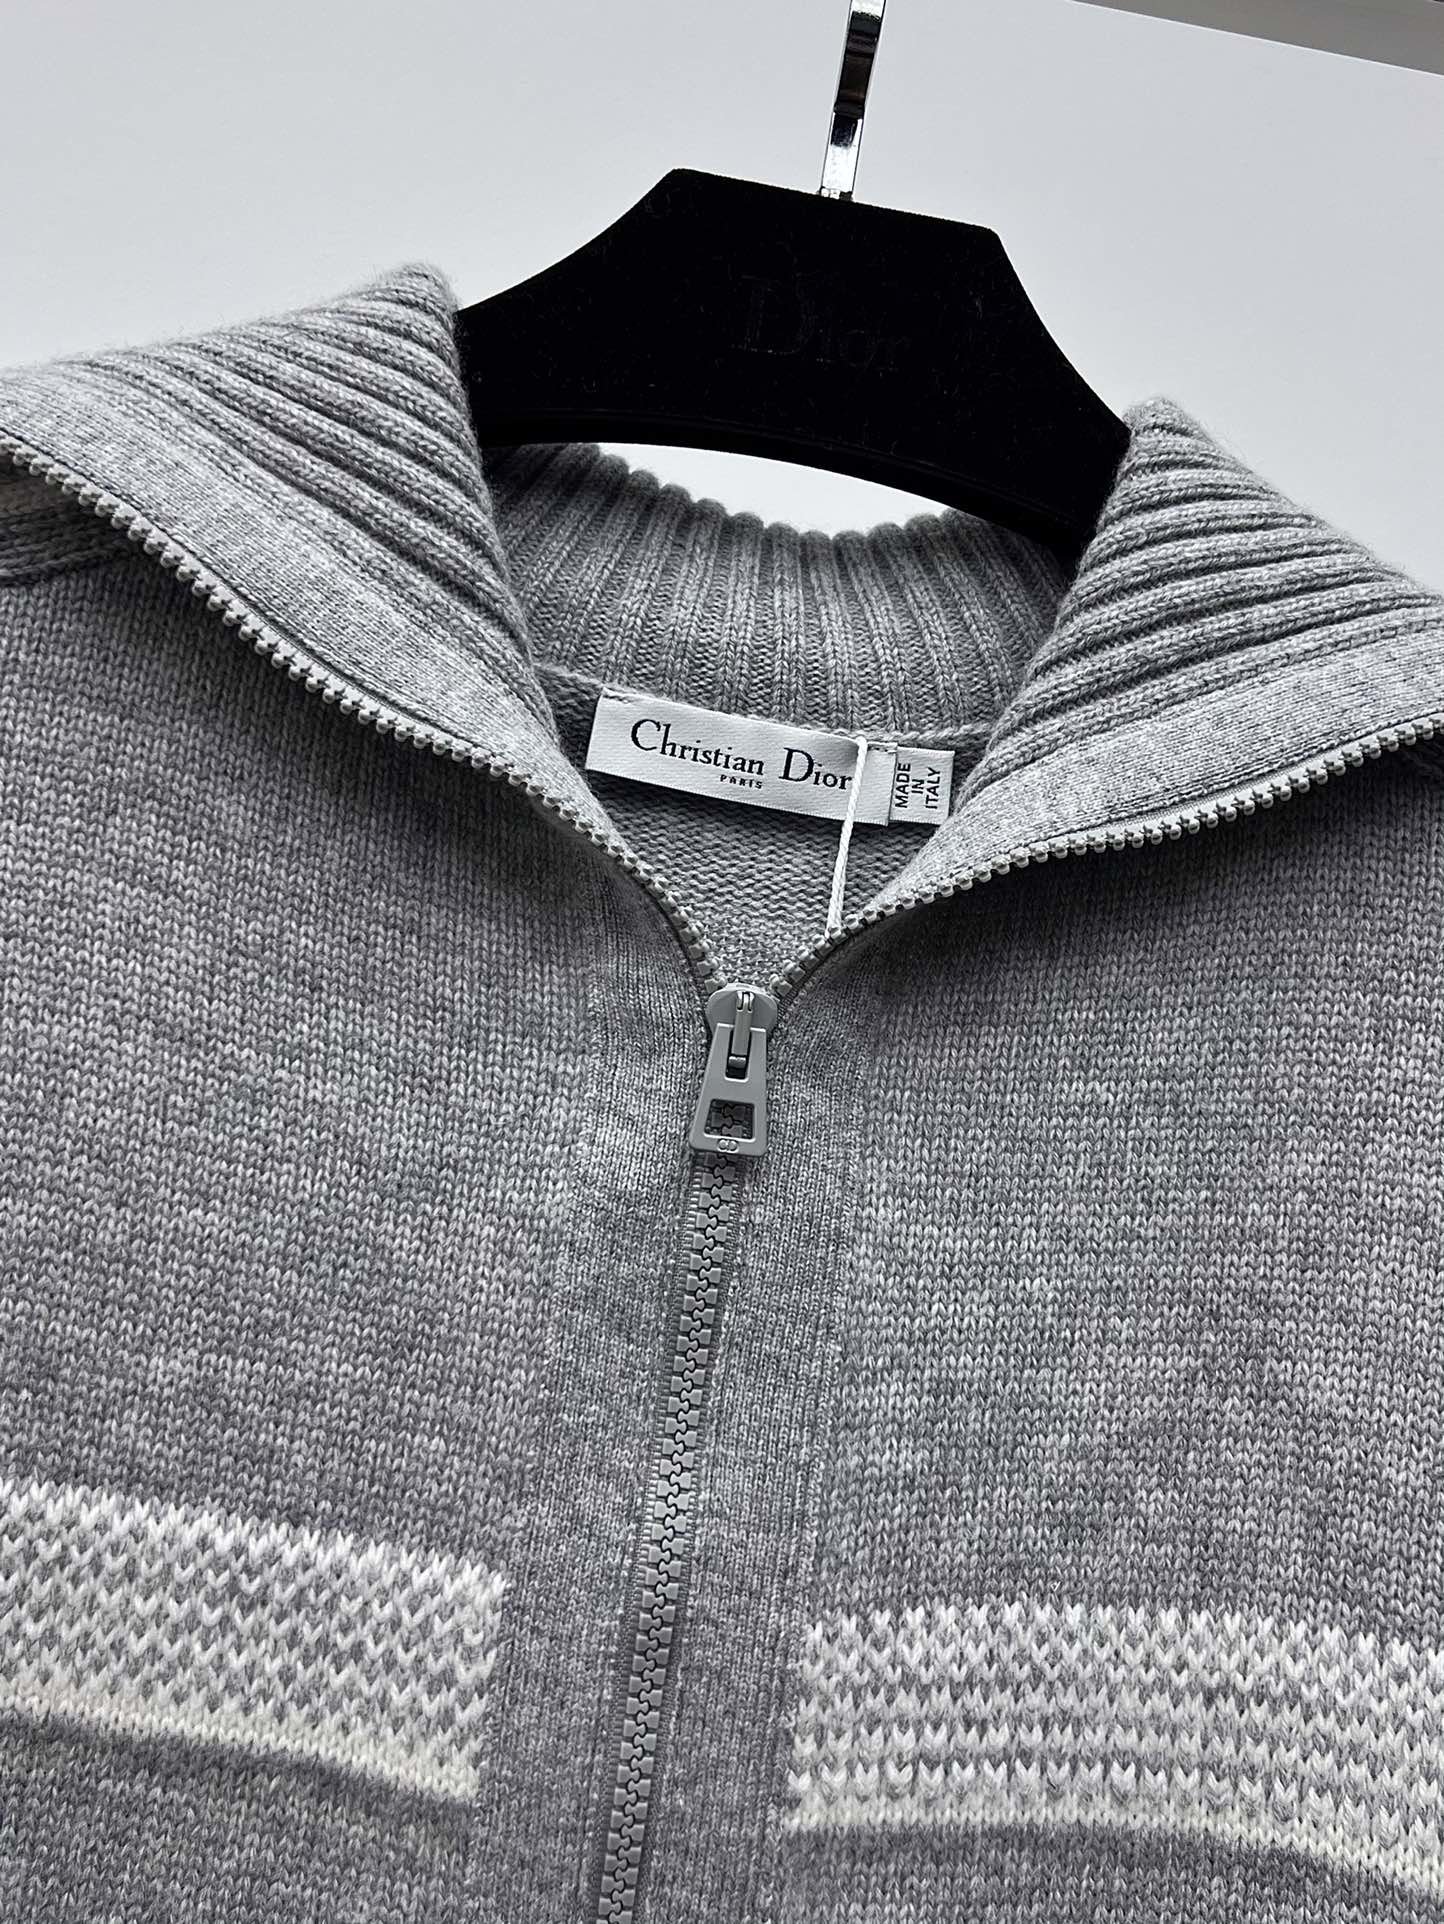 Dio*滑雪系列翻领开衫23秋冬DiorAlps限定系列采用羊毛羊绒混纺针织面料精心制作饰以对比色蝴蝶图